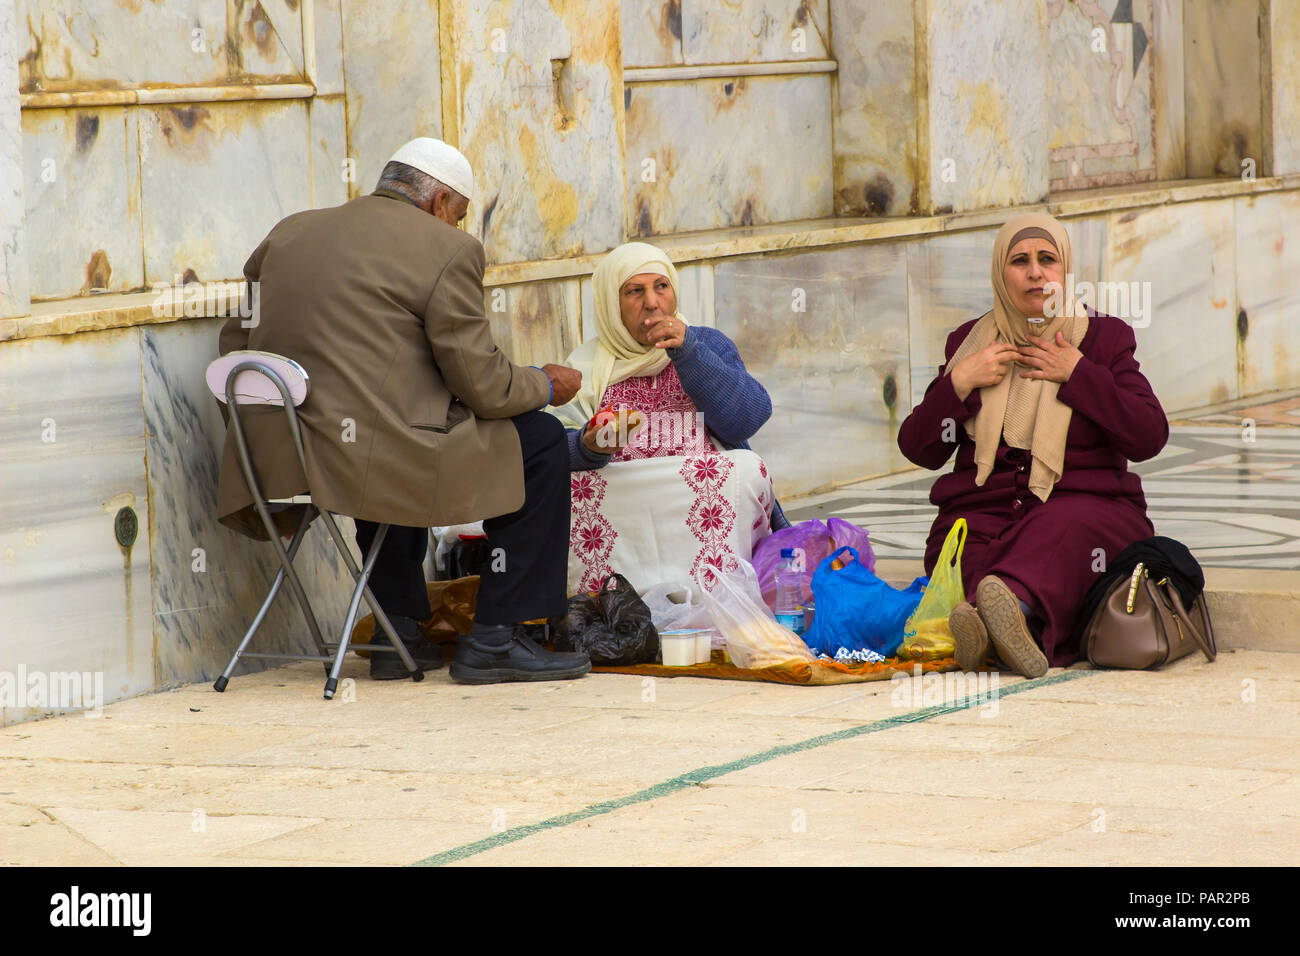 10 mai 2018. Un arabe et deux compagnons prendre un repas léger au cours d'une visite sur l'esplanade des mosquées à Jérusalem Israël Banque D'Images